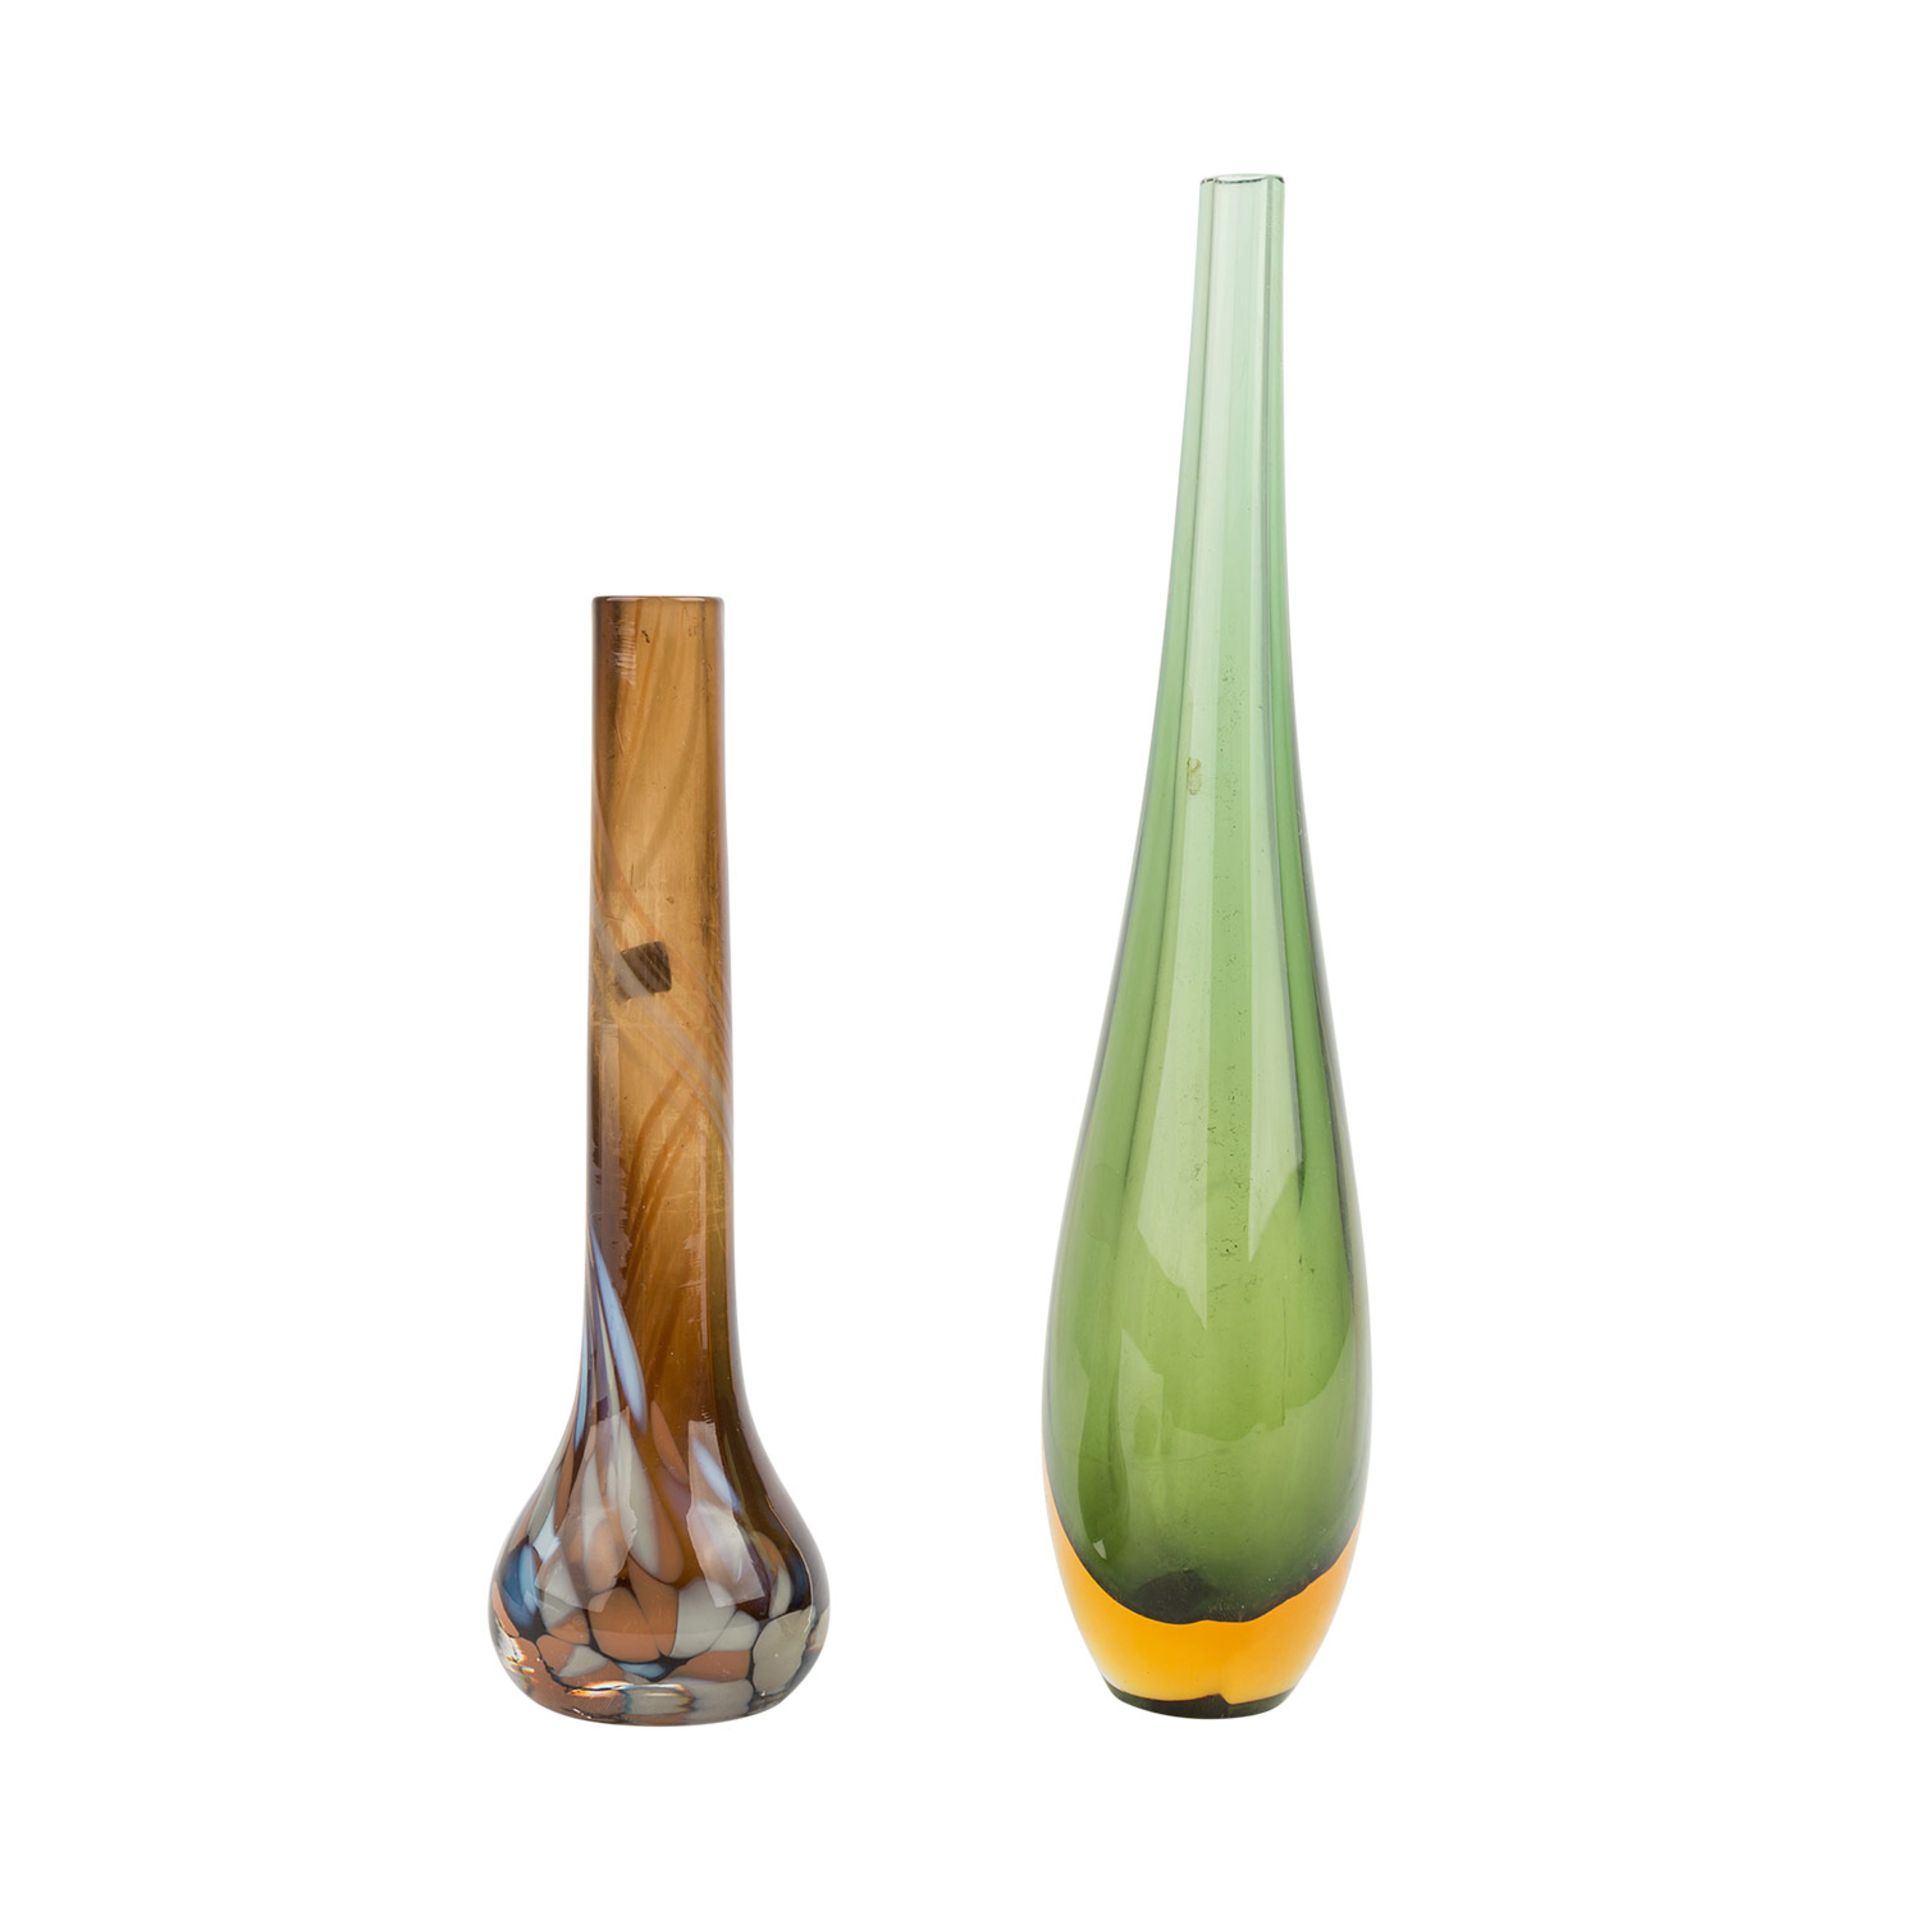 FÜNFTEILIGES KONVOLUT MODERNES GLASZwei Vasen, drei Paperweights. Höhe der Vasen: 29 bzw. 21 cm. - Image 2 of 4